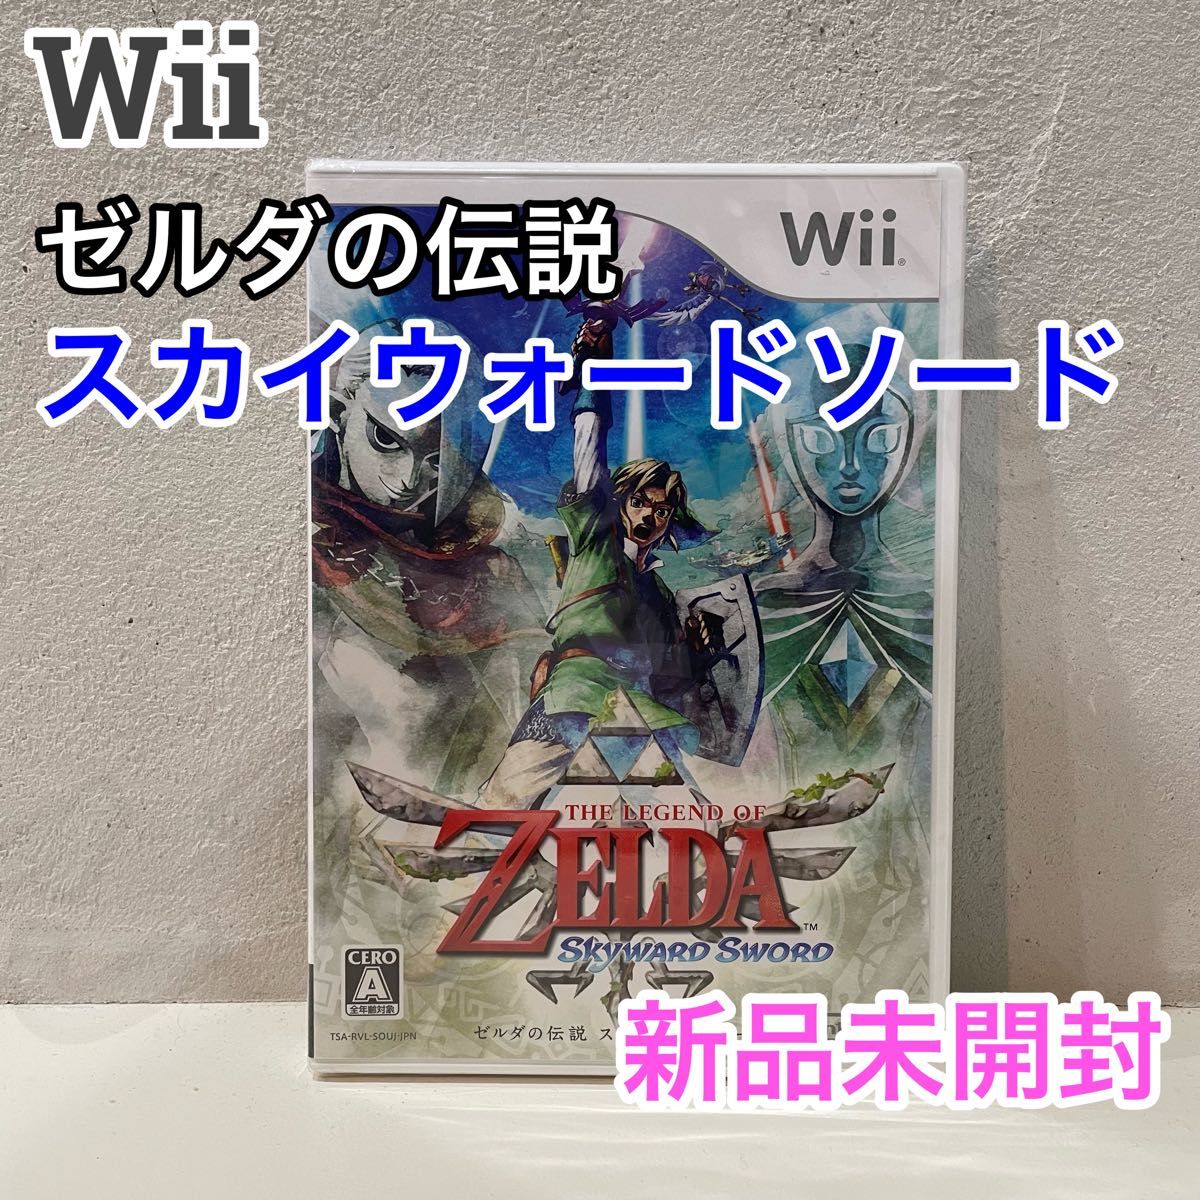 ゼルダの伝説 スカイウォードソード Wii ソフト ゲーム リンク  ゼルダ